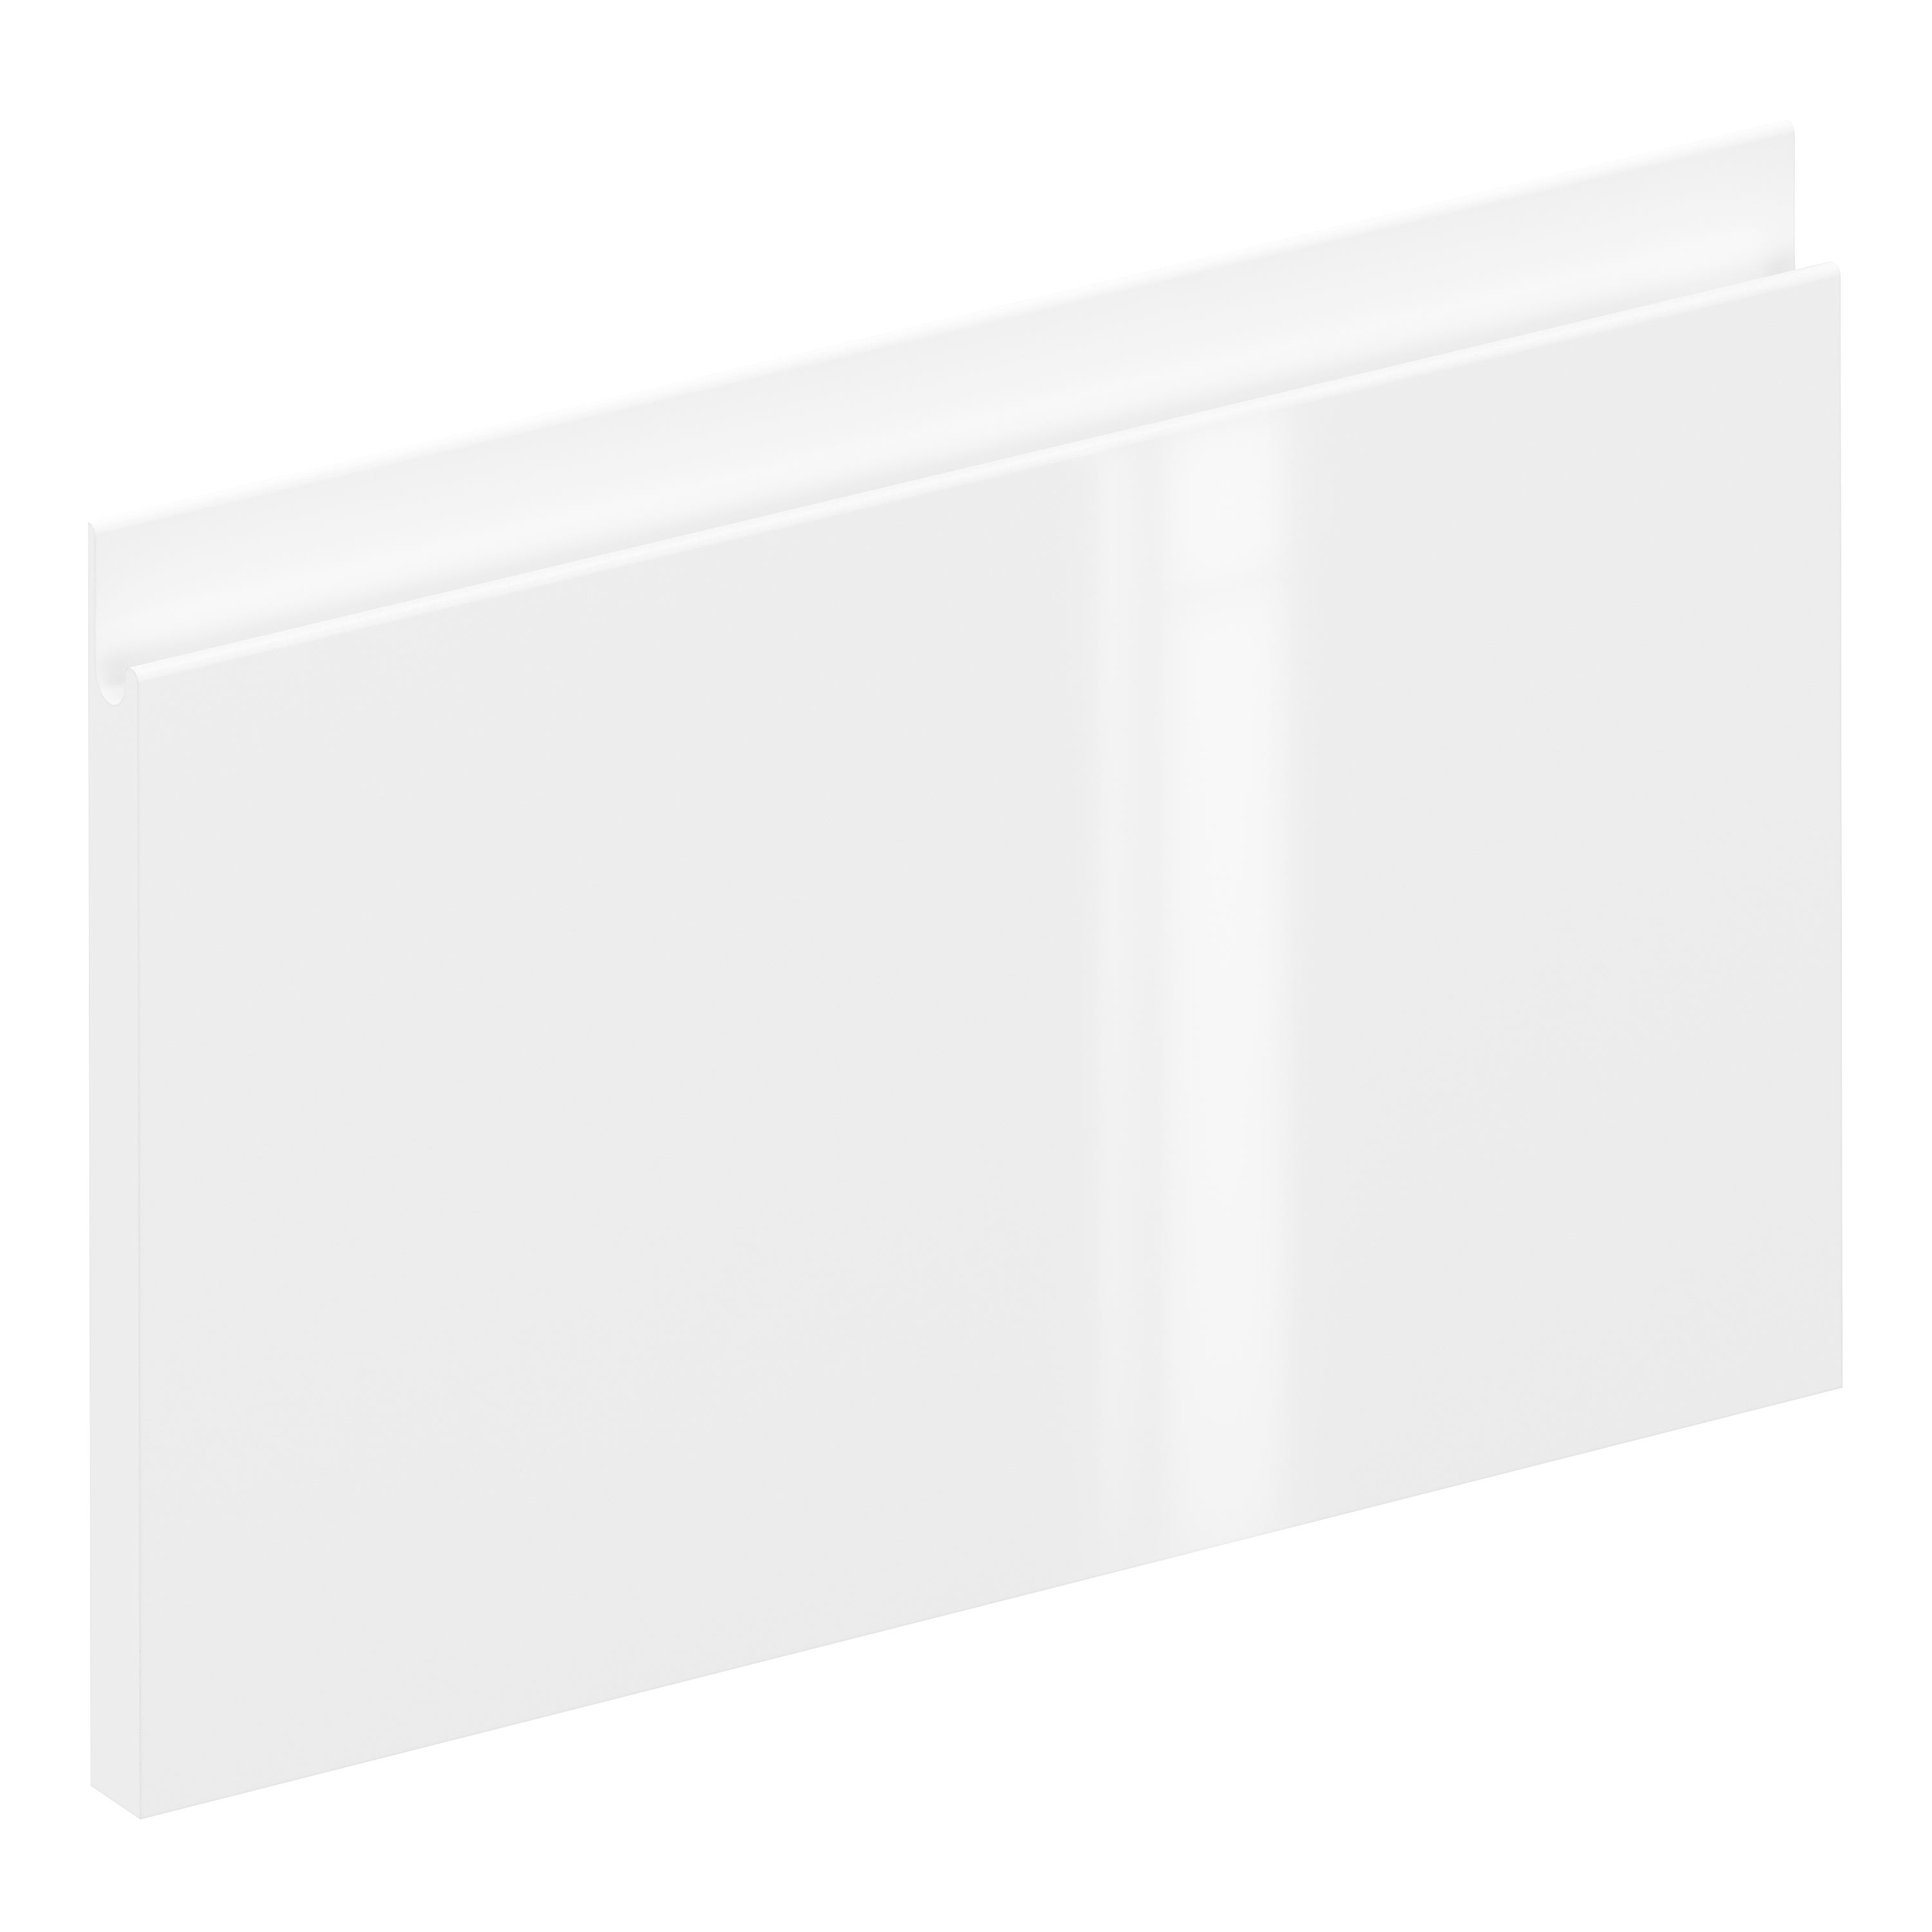 Frente de cajón de cocina tokyo blanco brillo h 25.6 x l 40 cm